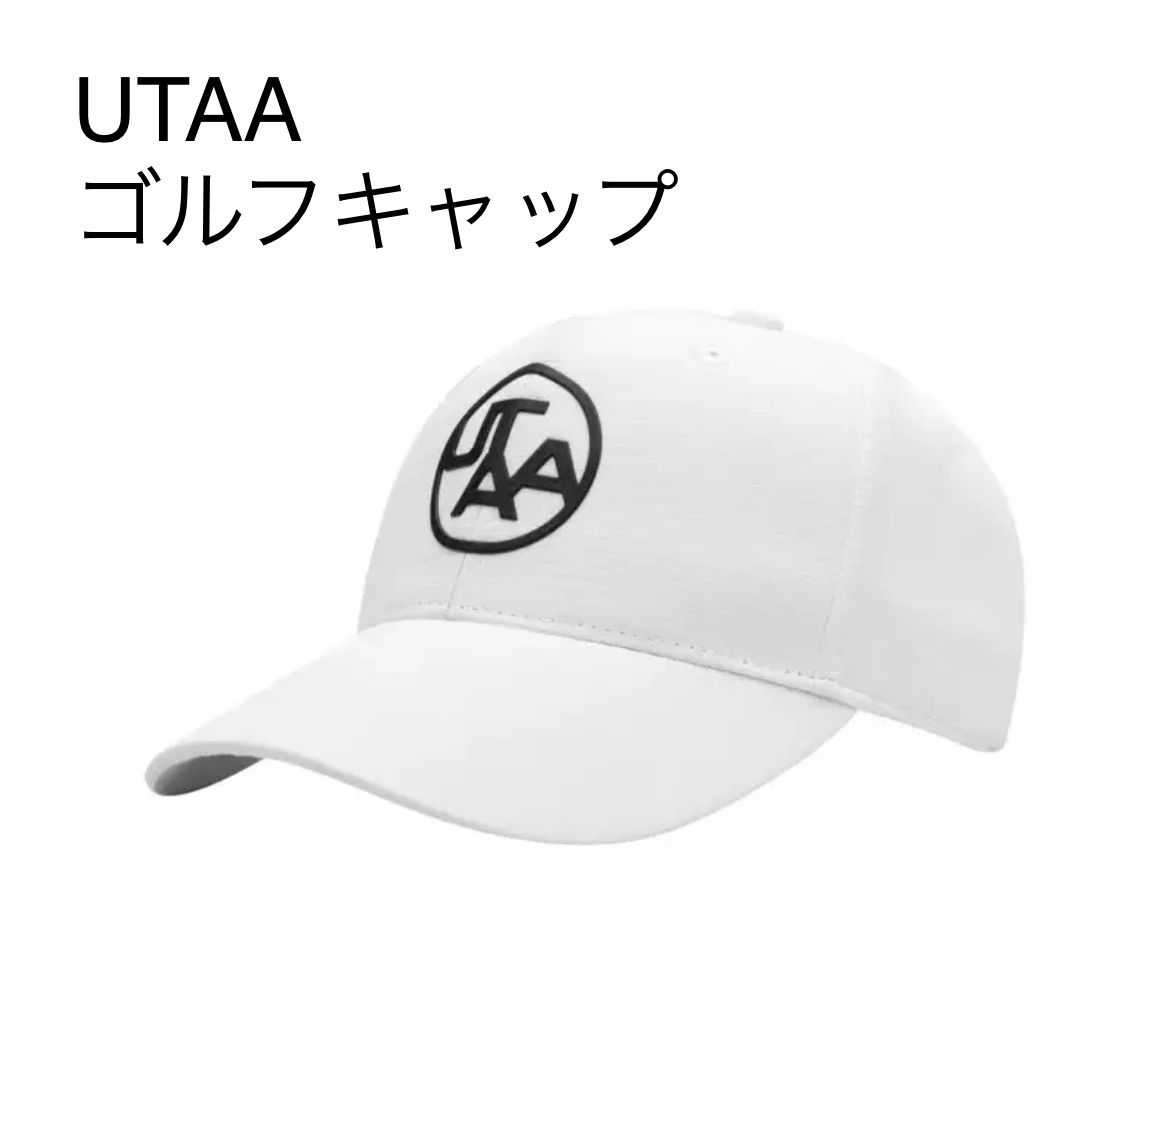 UTAA ウタ ゴルフ キャップ レディース ホワイト 白 帽子 おしゃれ